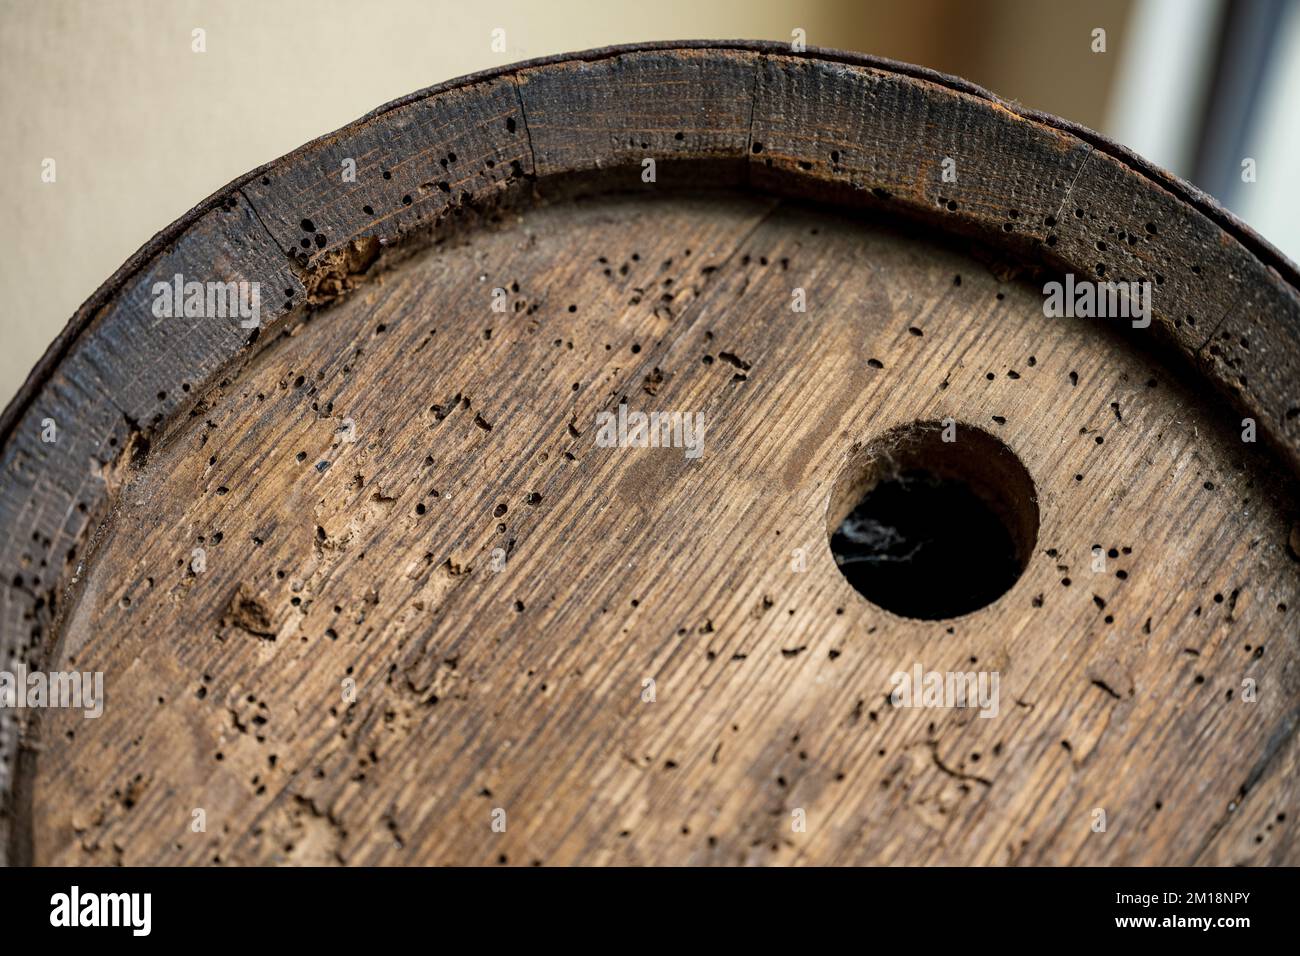 A closeup view of a wooden barrel top part Stock Photo